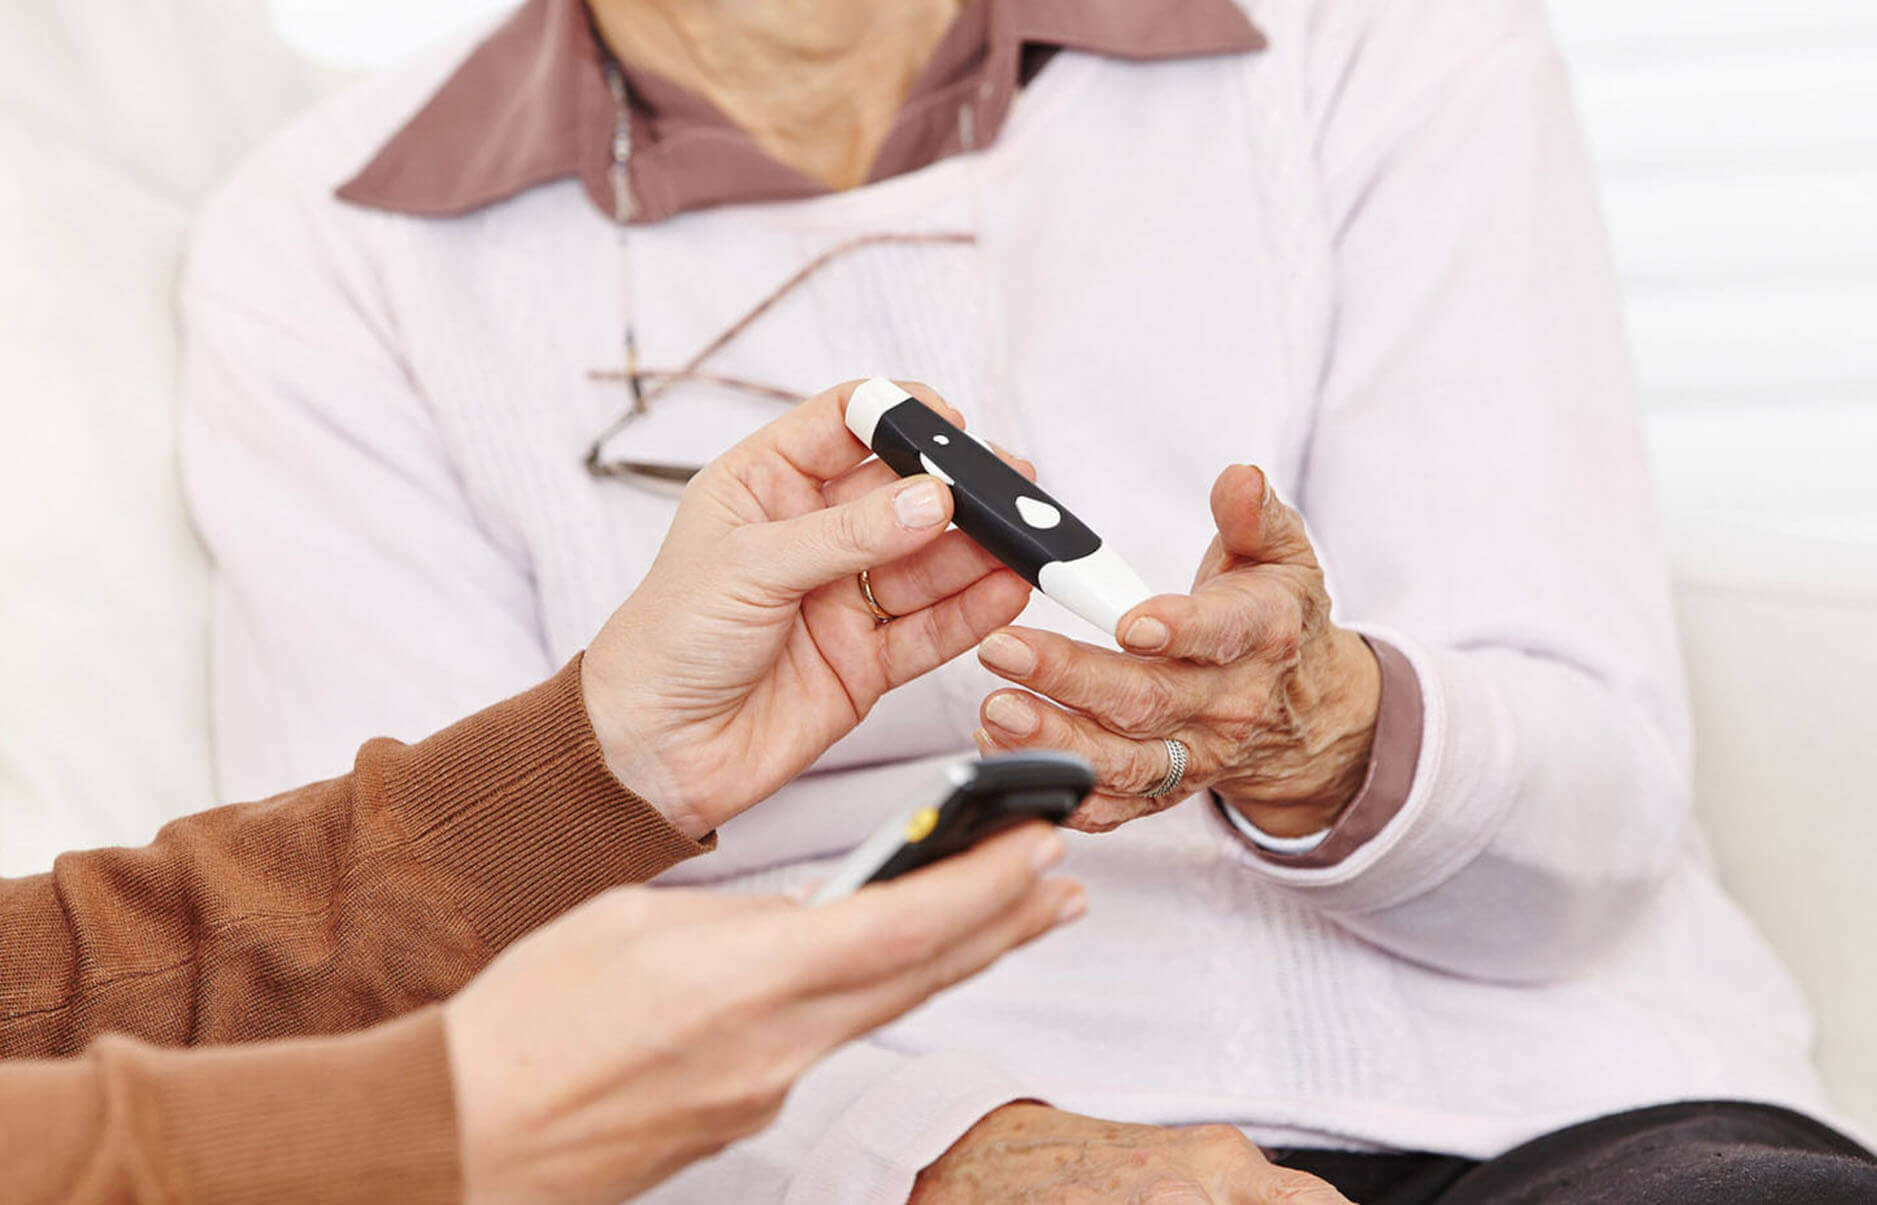 Sprawdź co musisz wiedzieć o cukrzycy pracując jako opiekunka seniora